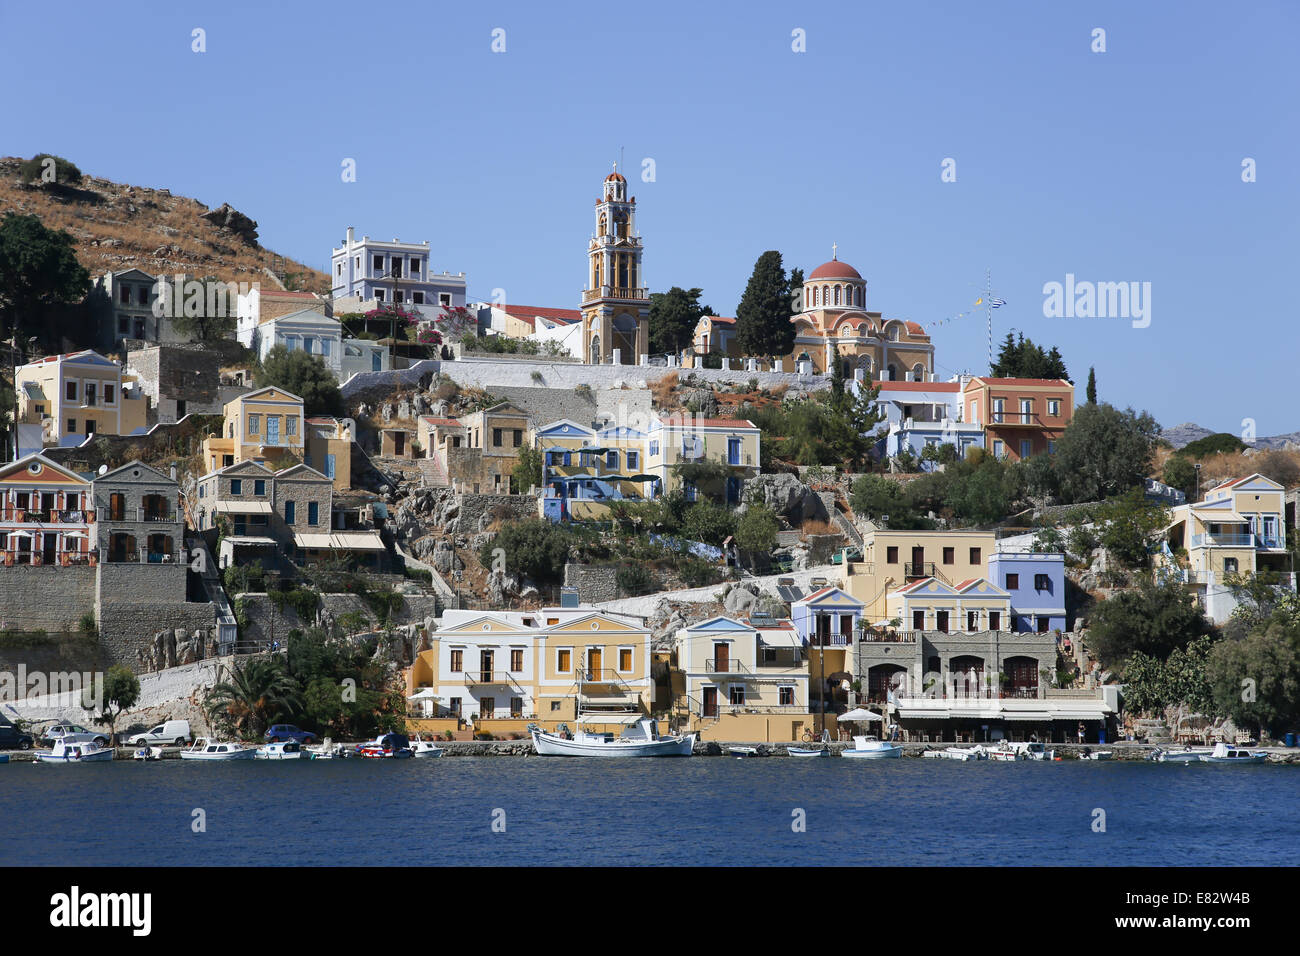 La città di Symi sull'isola greca di Symi Foto Stock